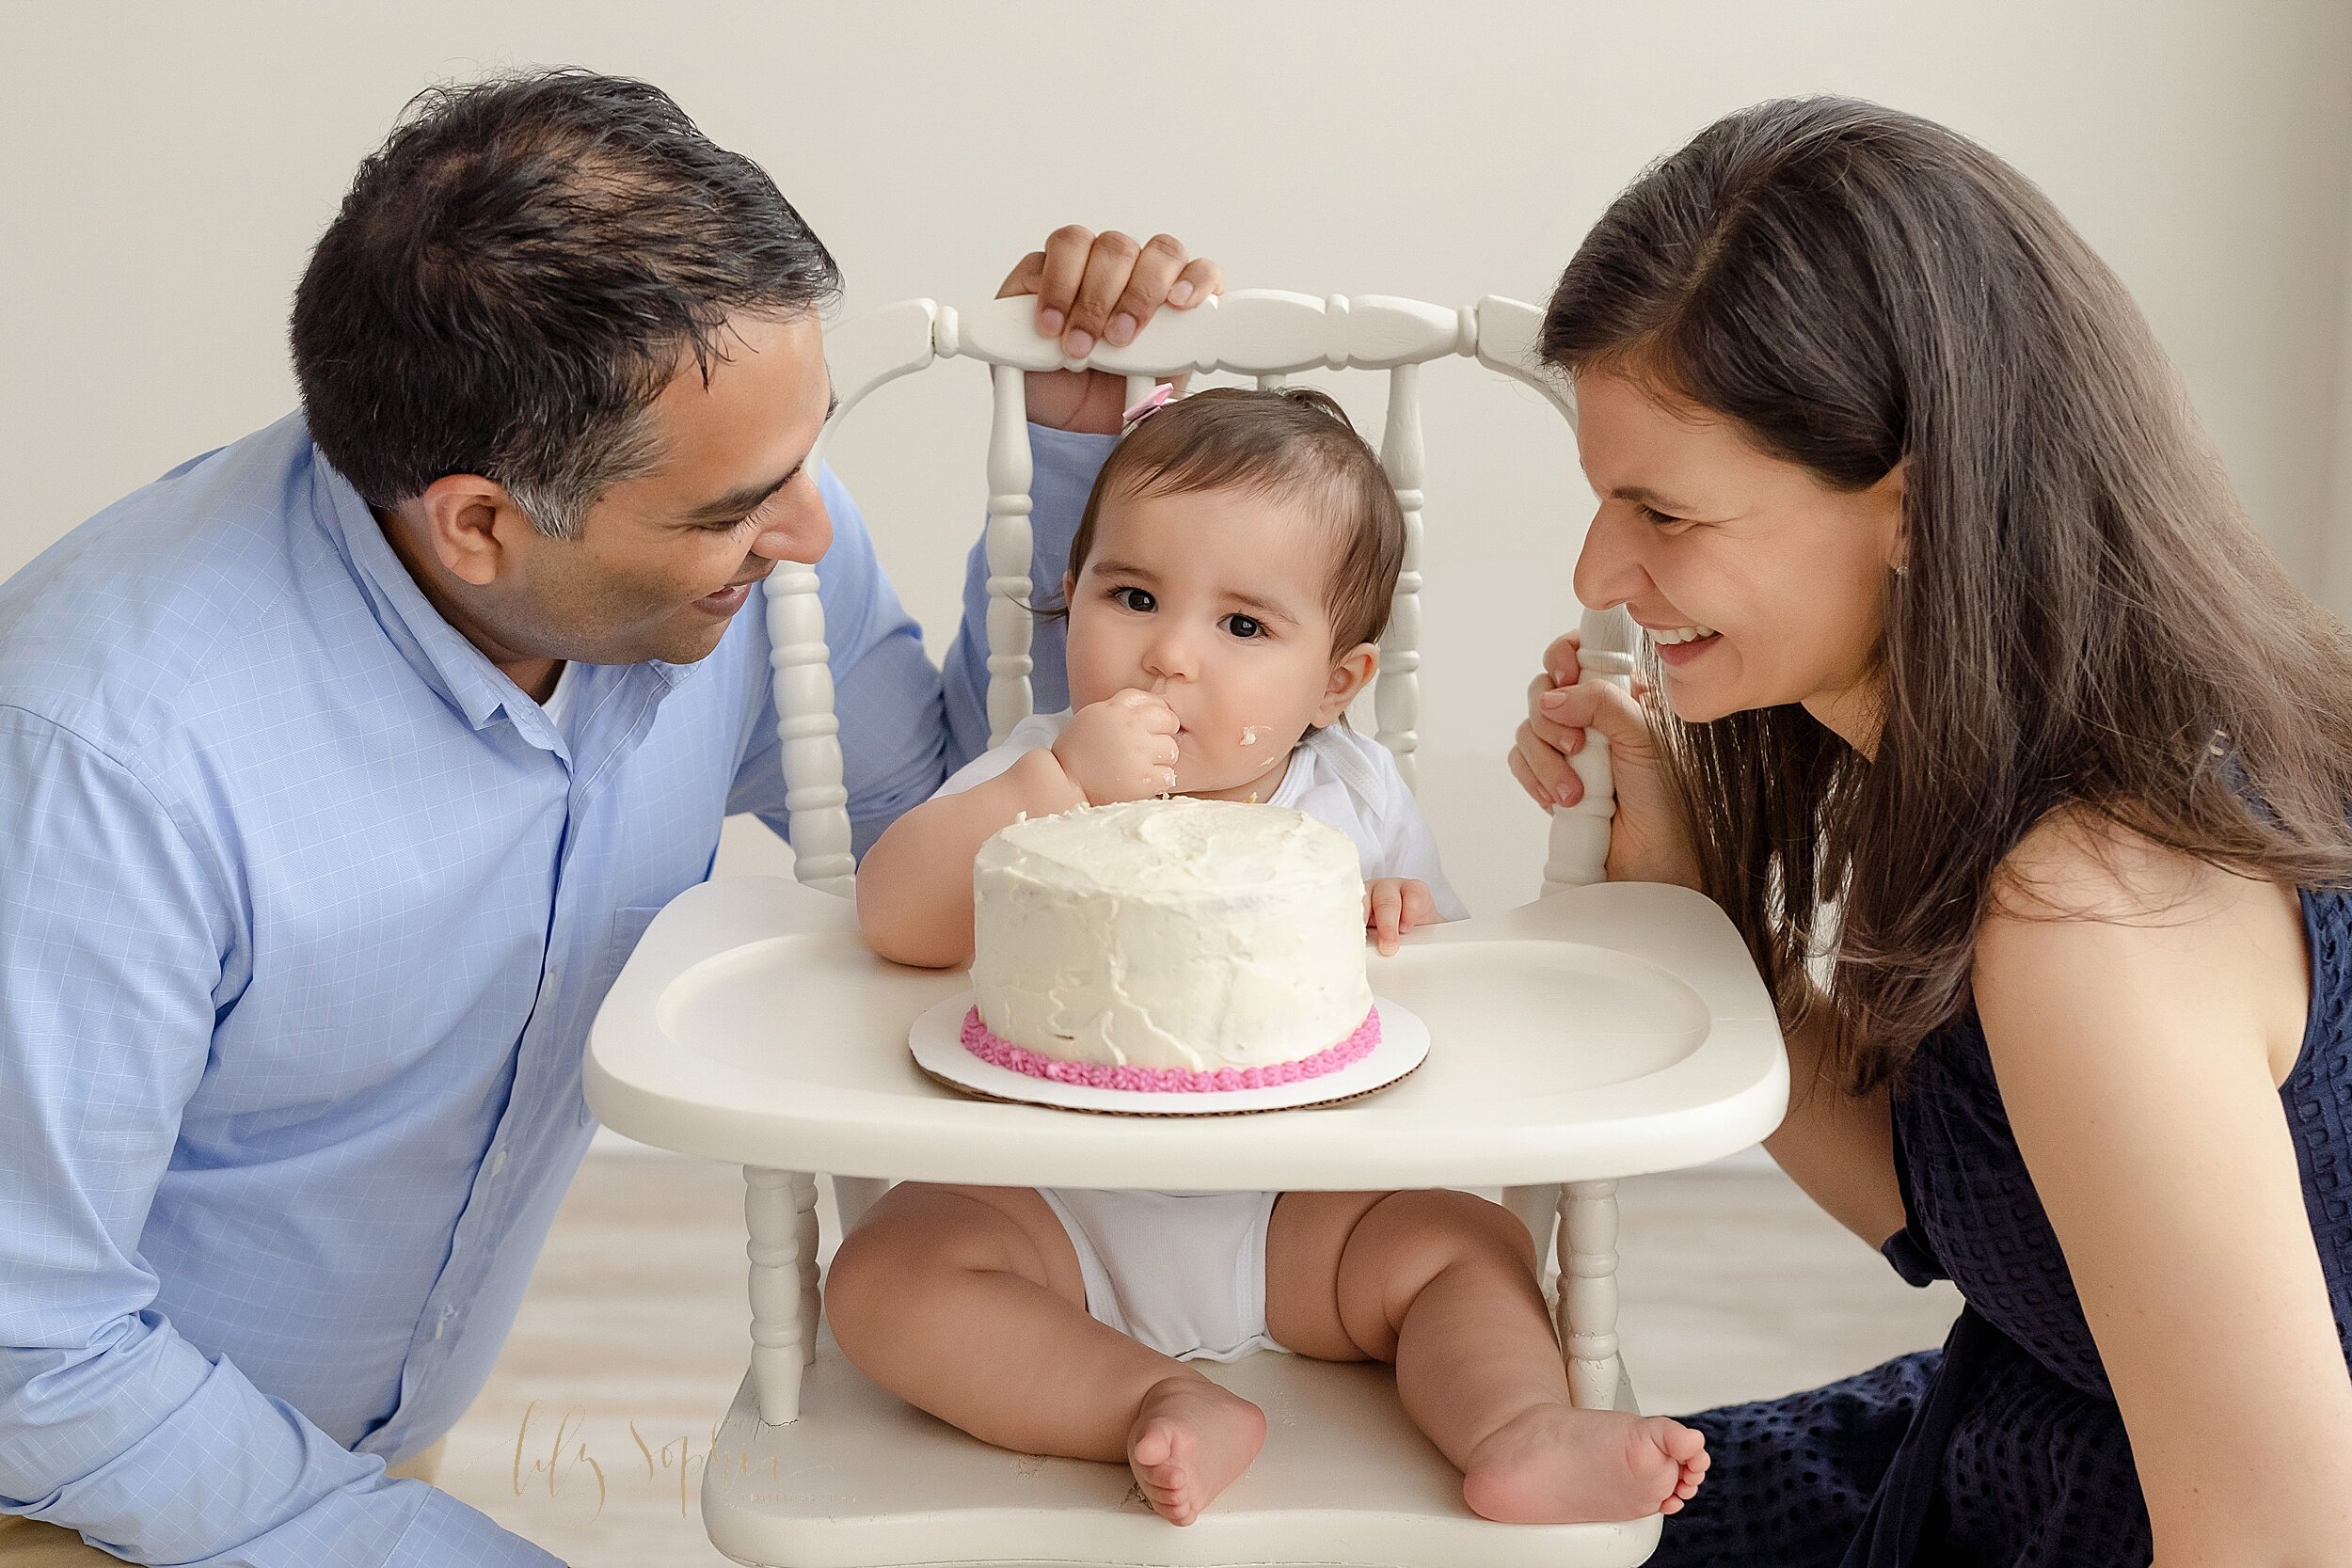 atlanta-georgia-buckhead-brookhaven-midtown-milestone-first-birthday-cake-smash-baby-girl-family-pictures_5641.jpg